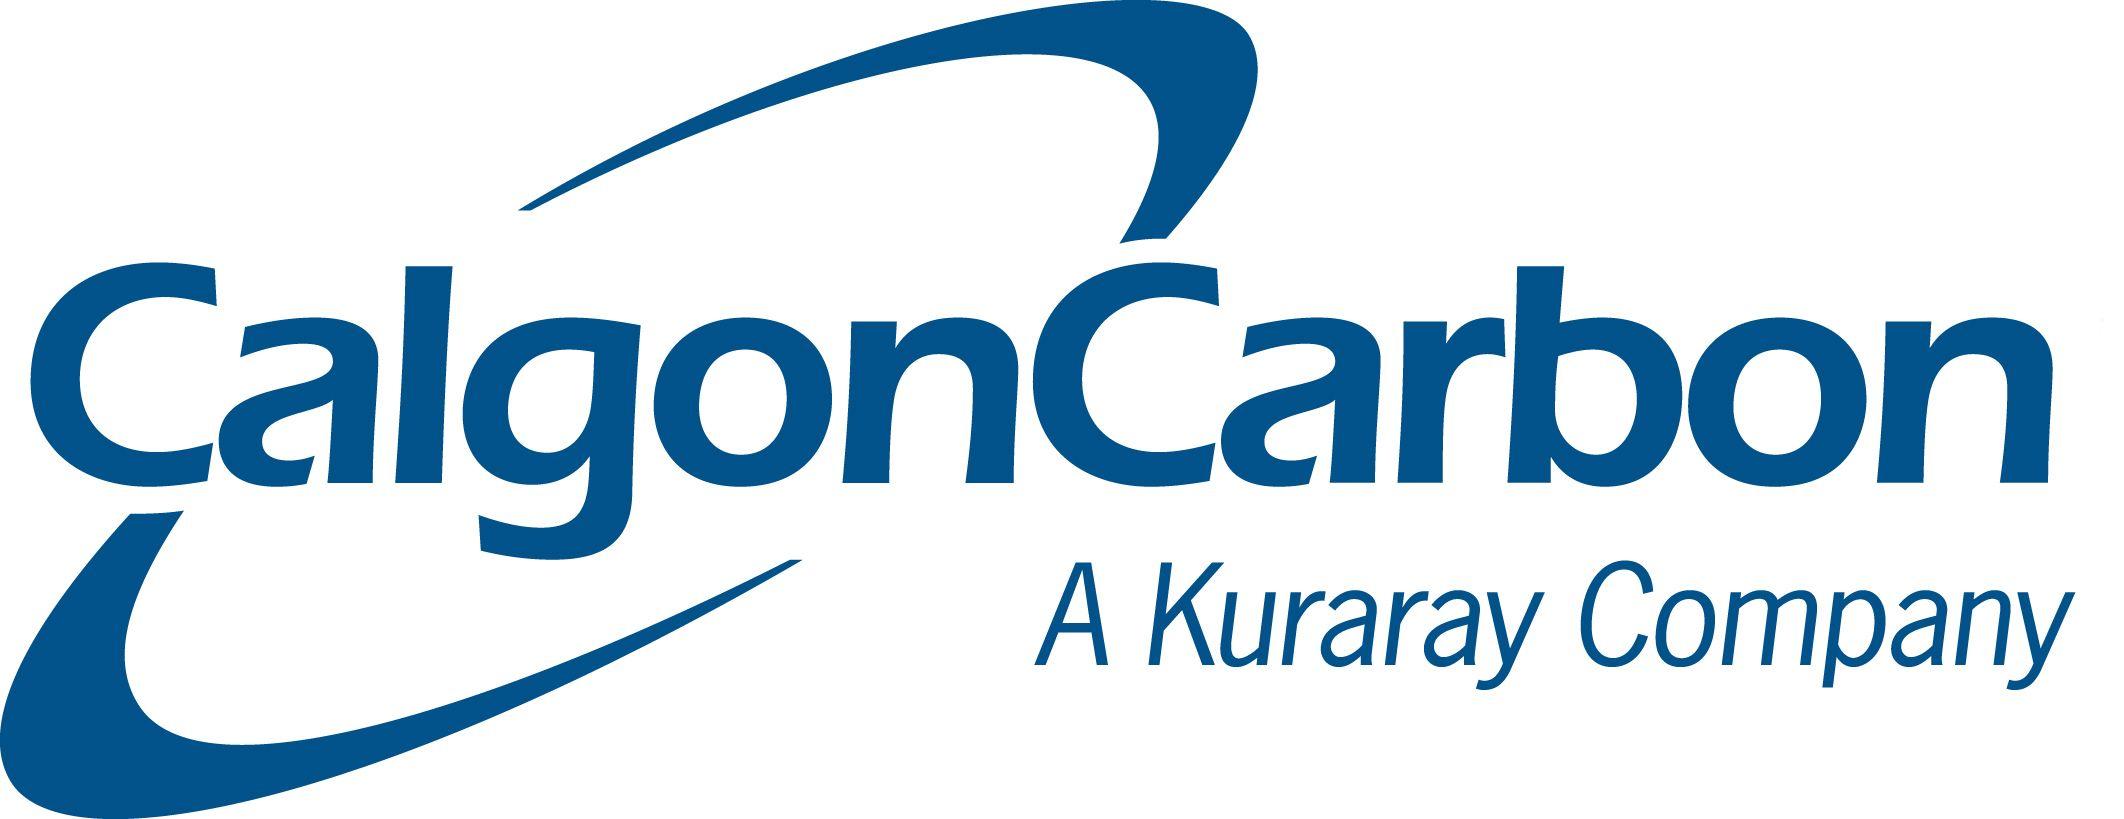 Kuraray Logo - News - Chemviron